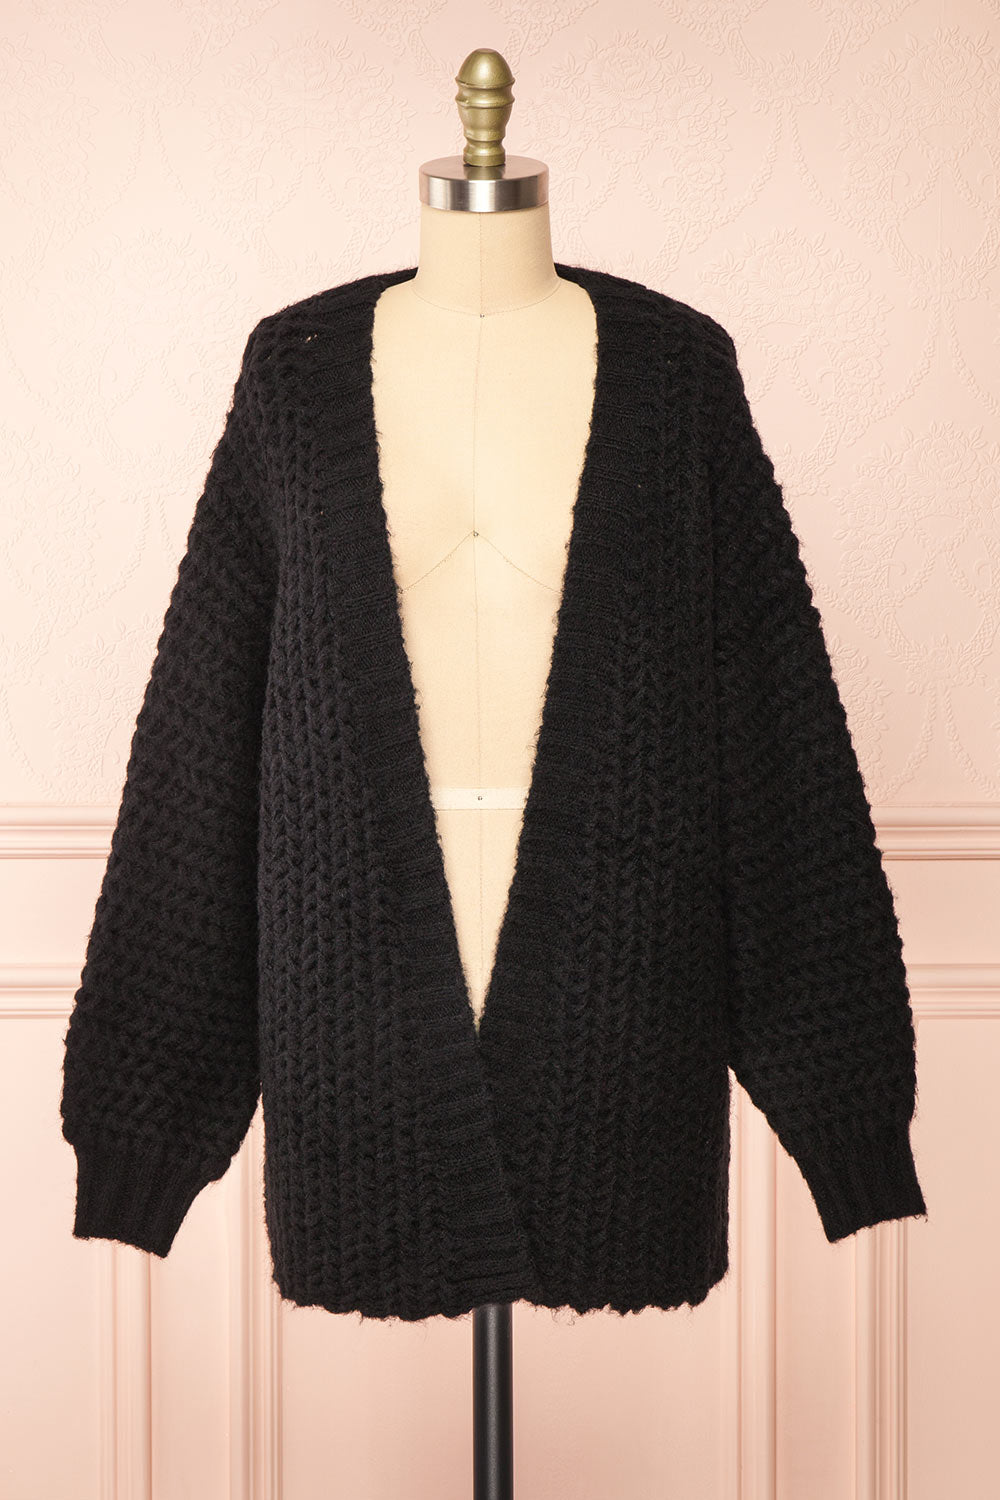 Francoise Black Knit Open-Front Cardigan | Boutique 1861 front view